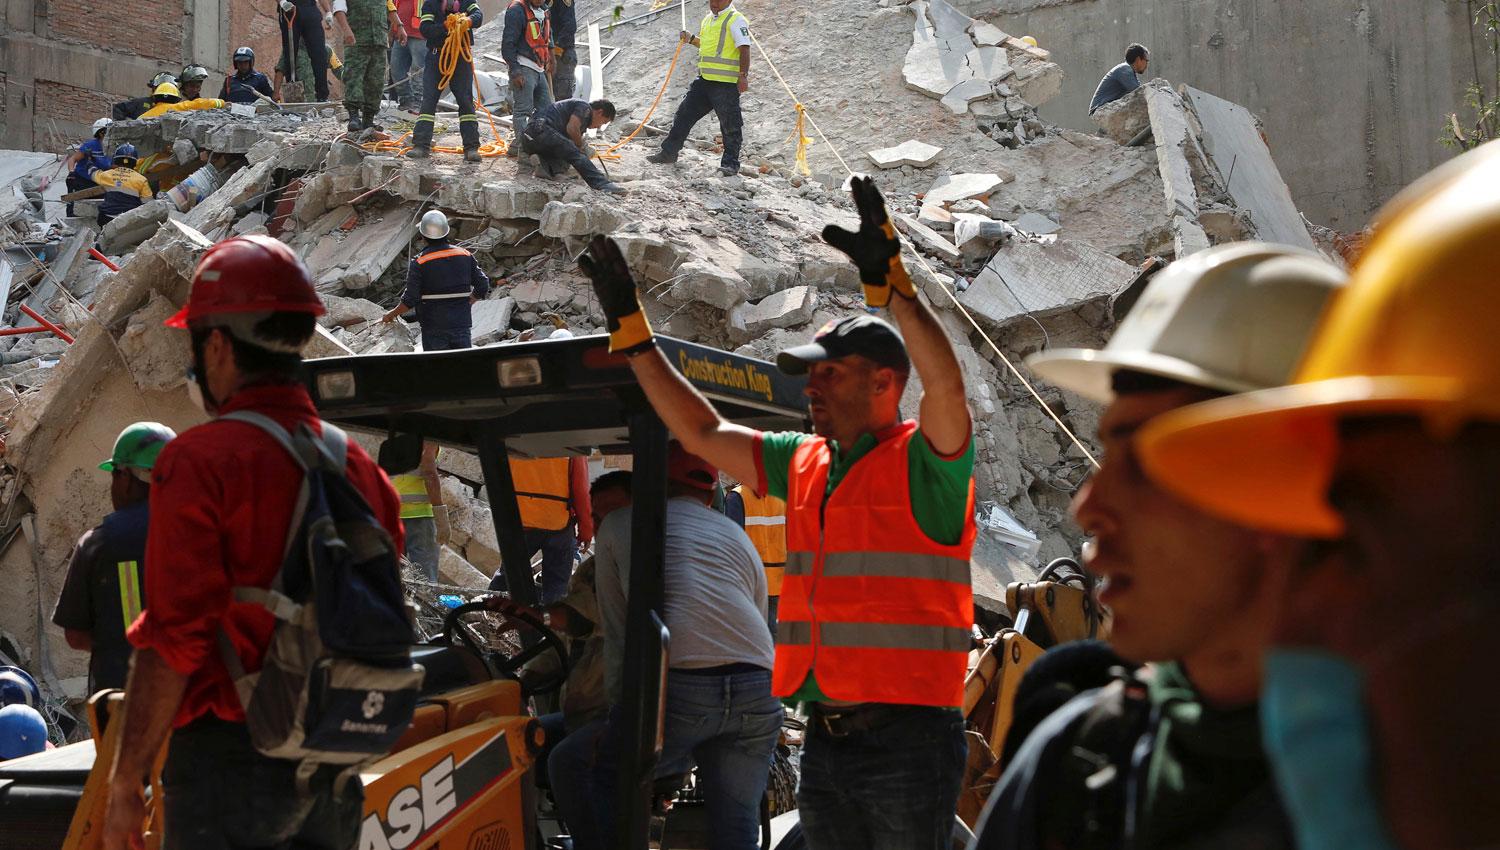 Los rescatistas piden silencio para intentar escuchar si hay sobrevivientes entre los escombros. REUTERS